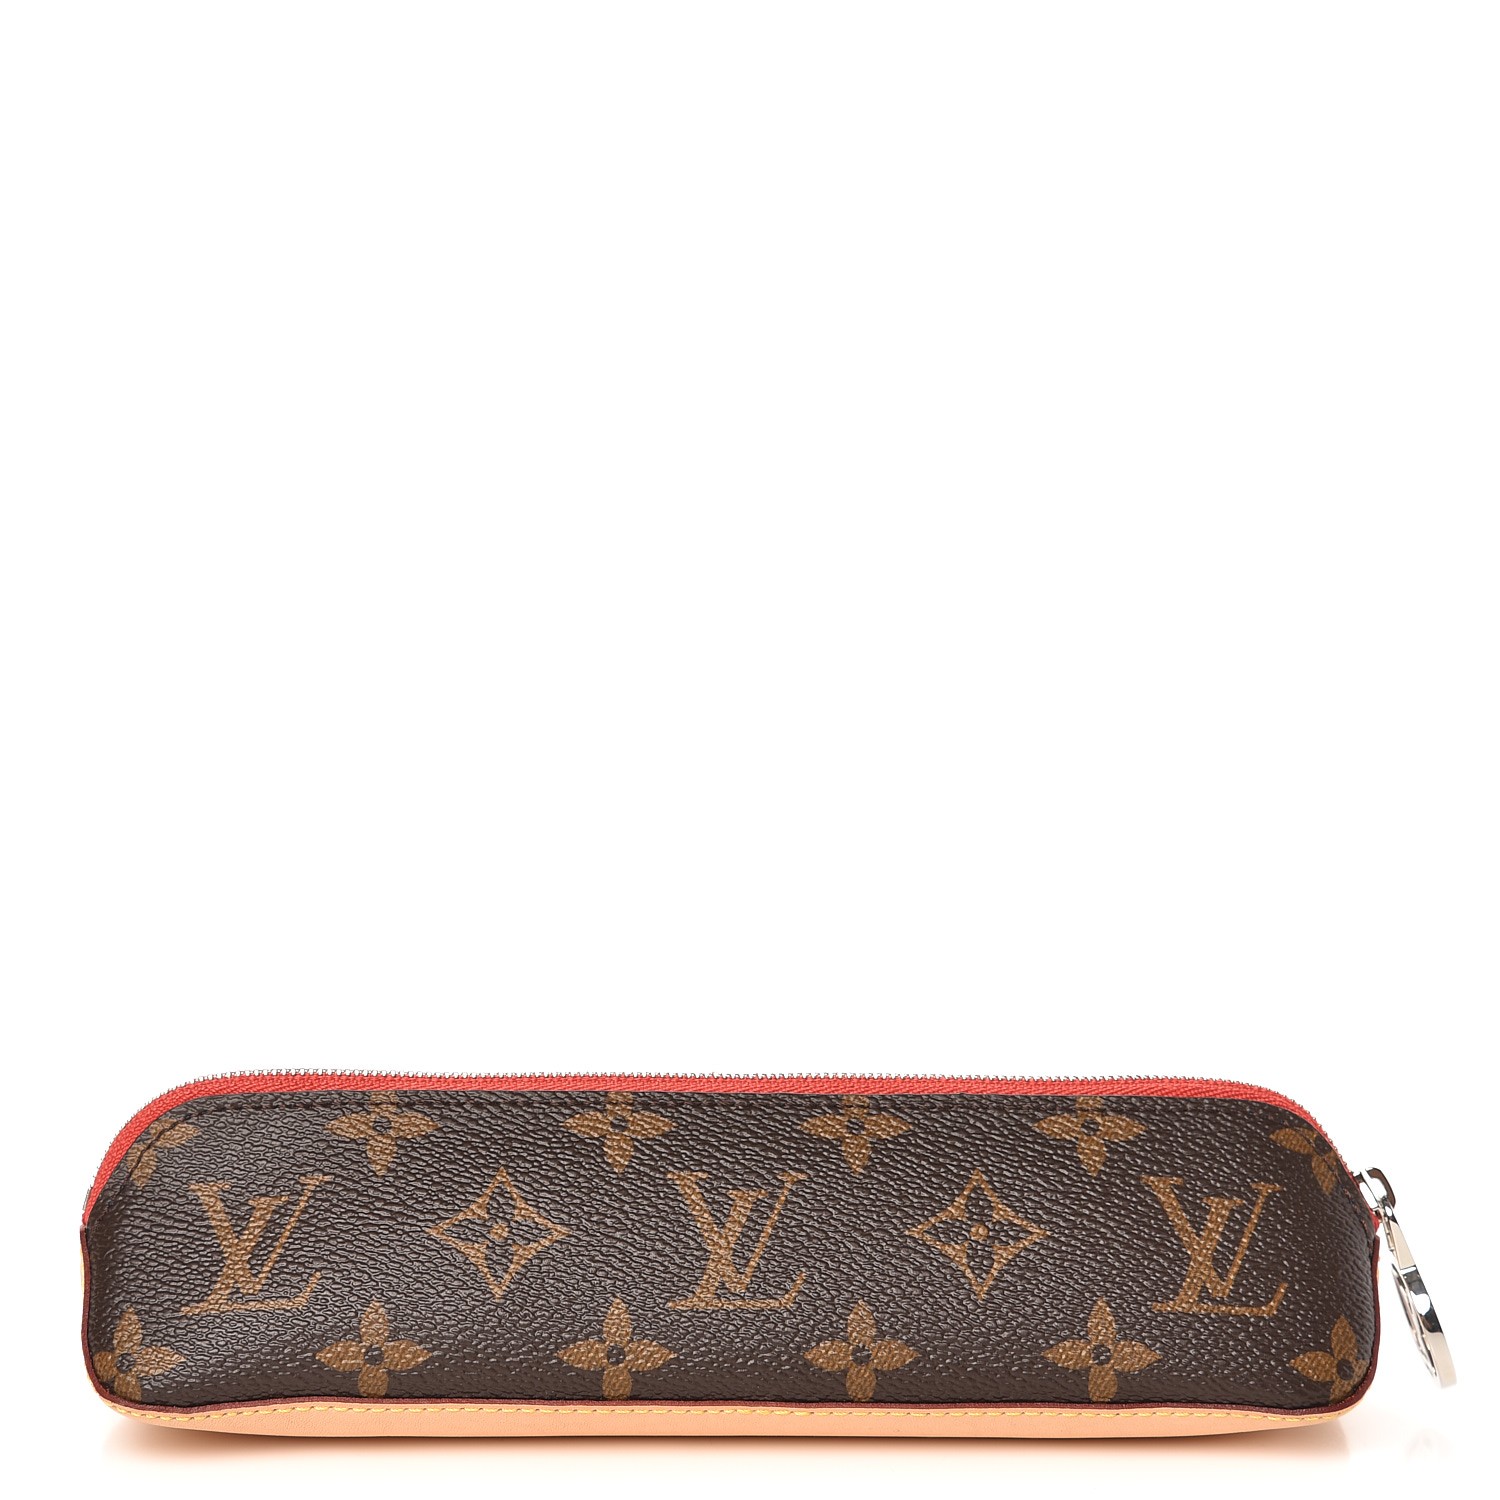 Louis Vuitton Buci Bag unboxing Review